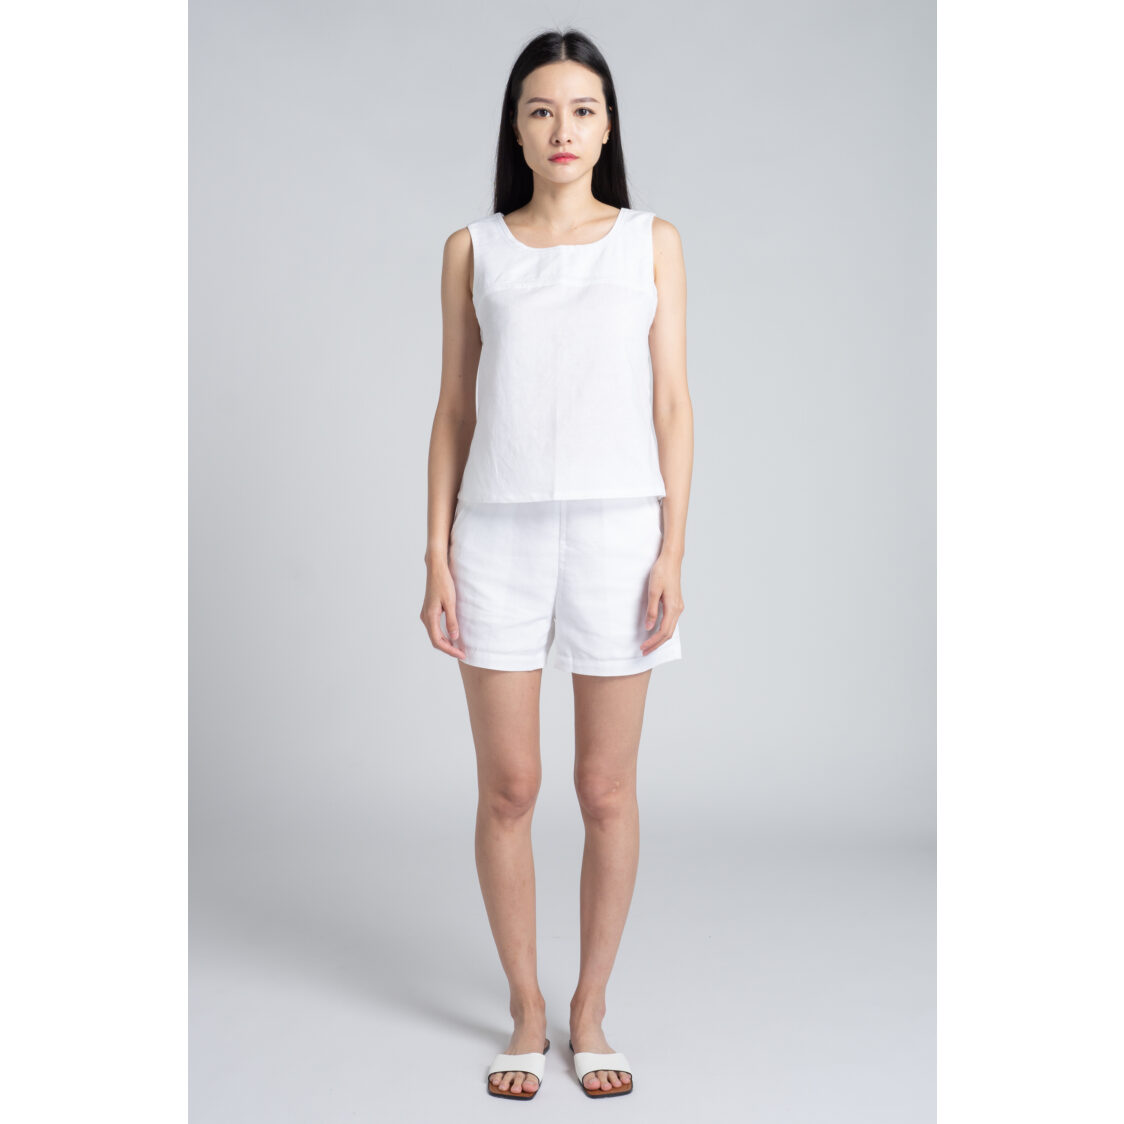 M Maison Linen Blend Sleevless Top - White